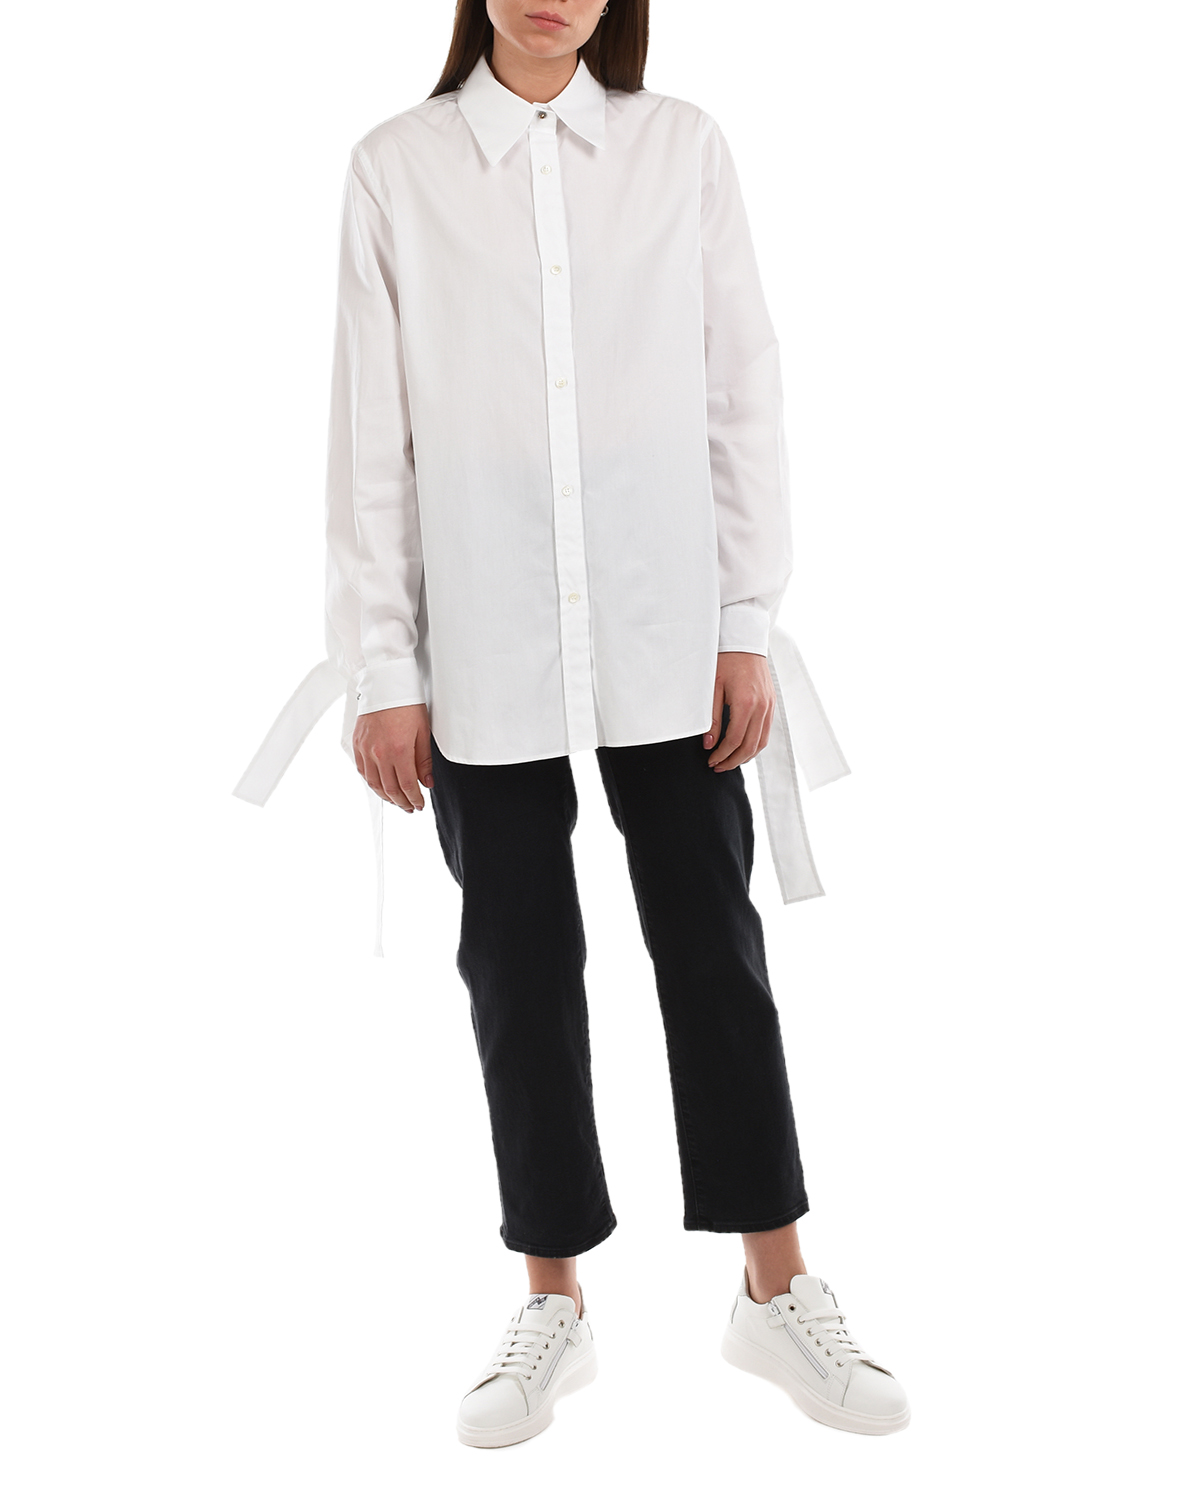 Удлиненная белая рубашка No. 21, размер 42, цвет белый - фото 4